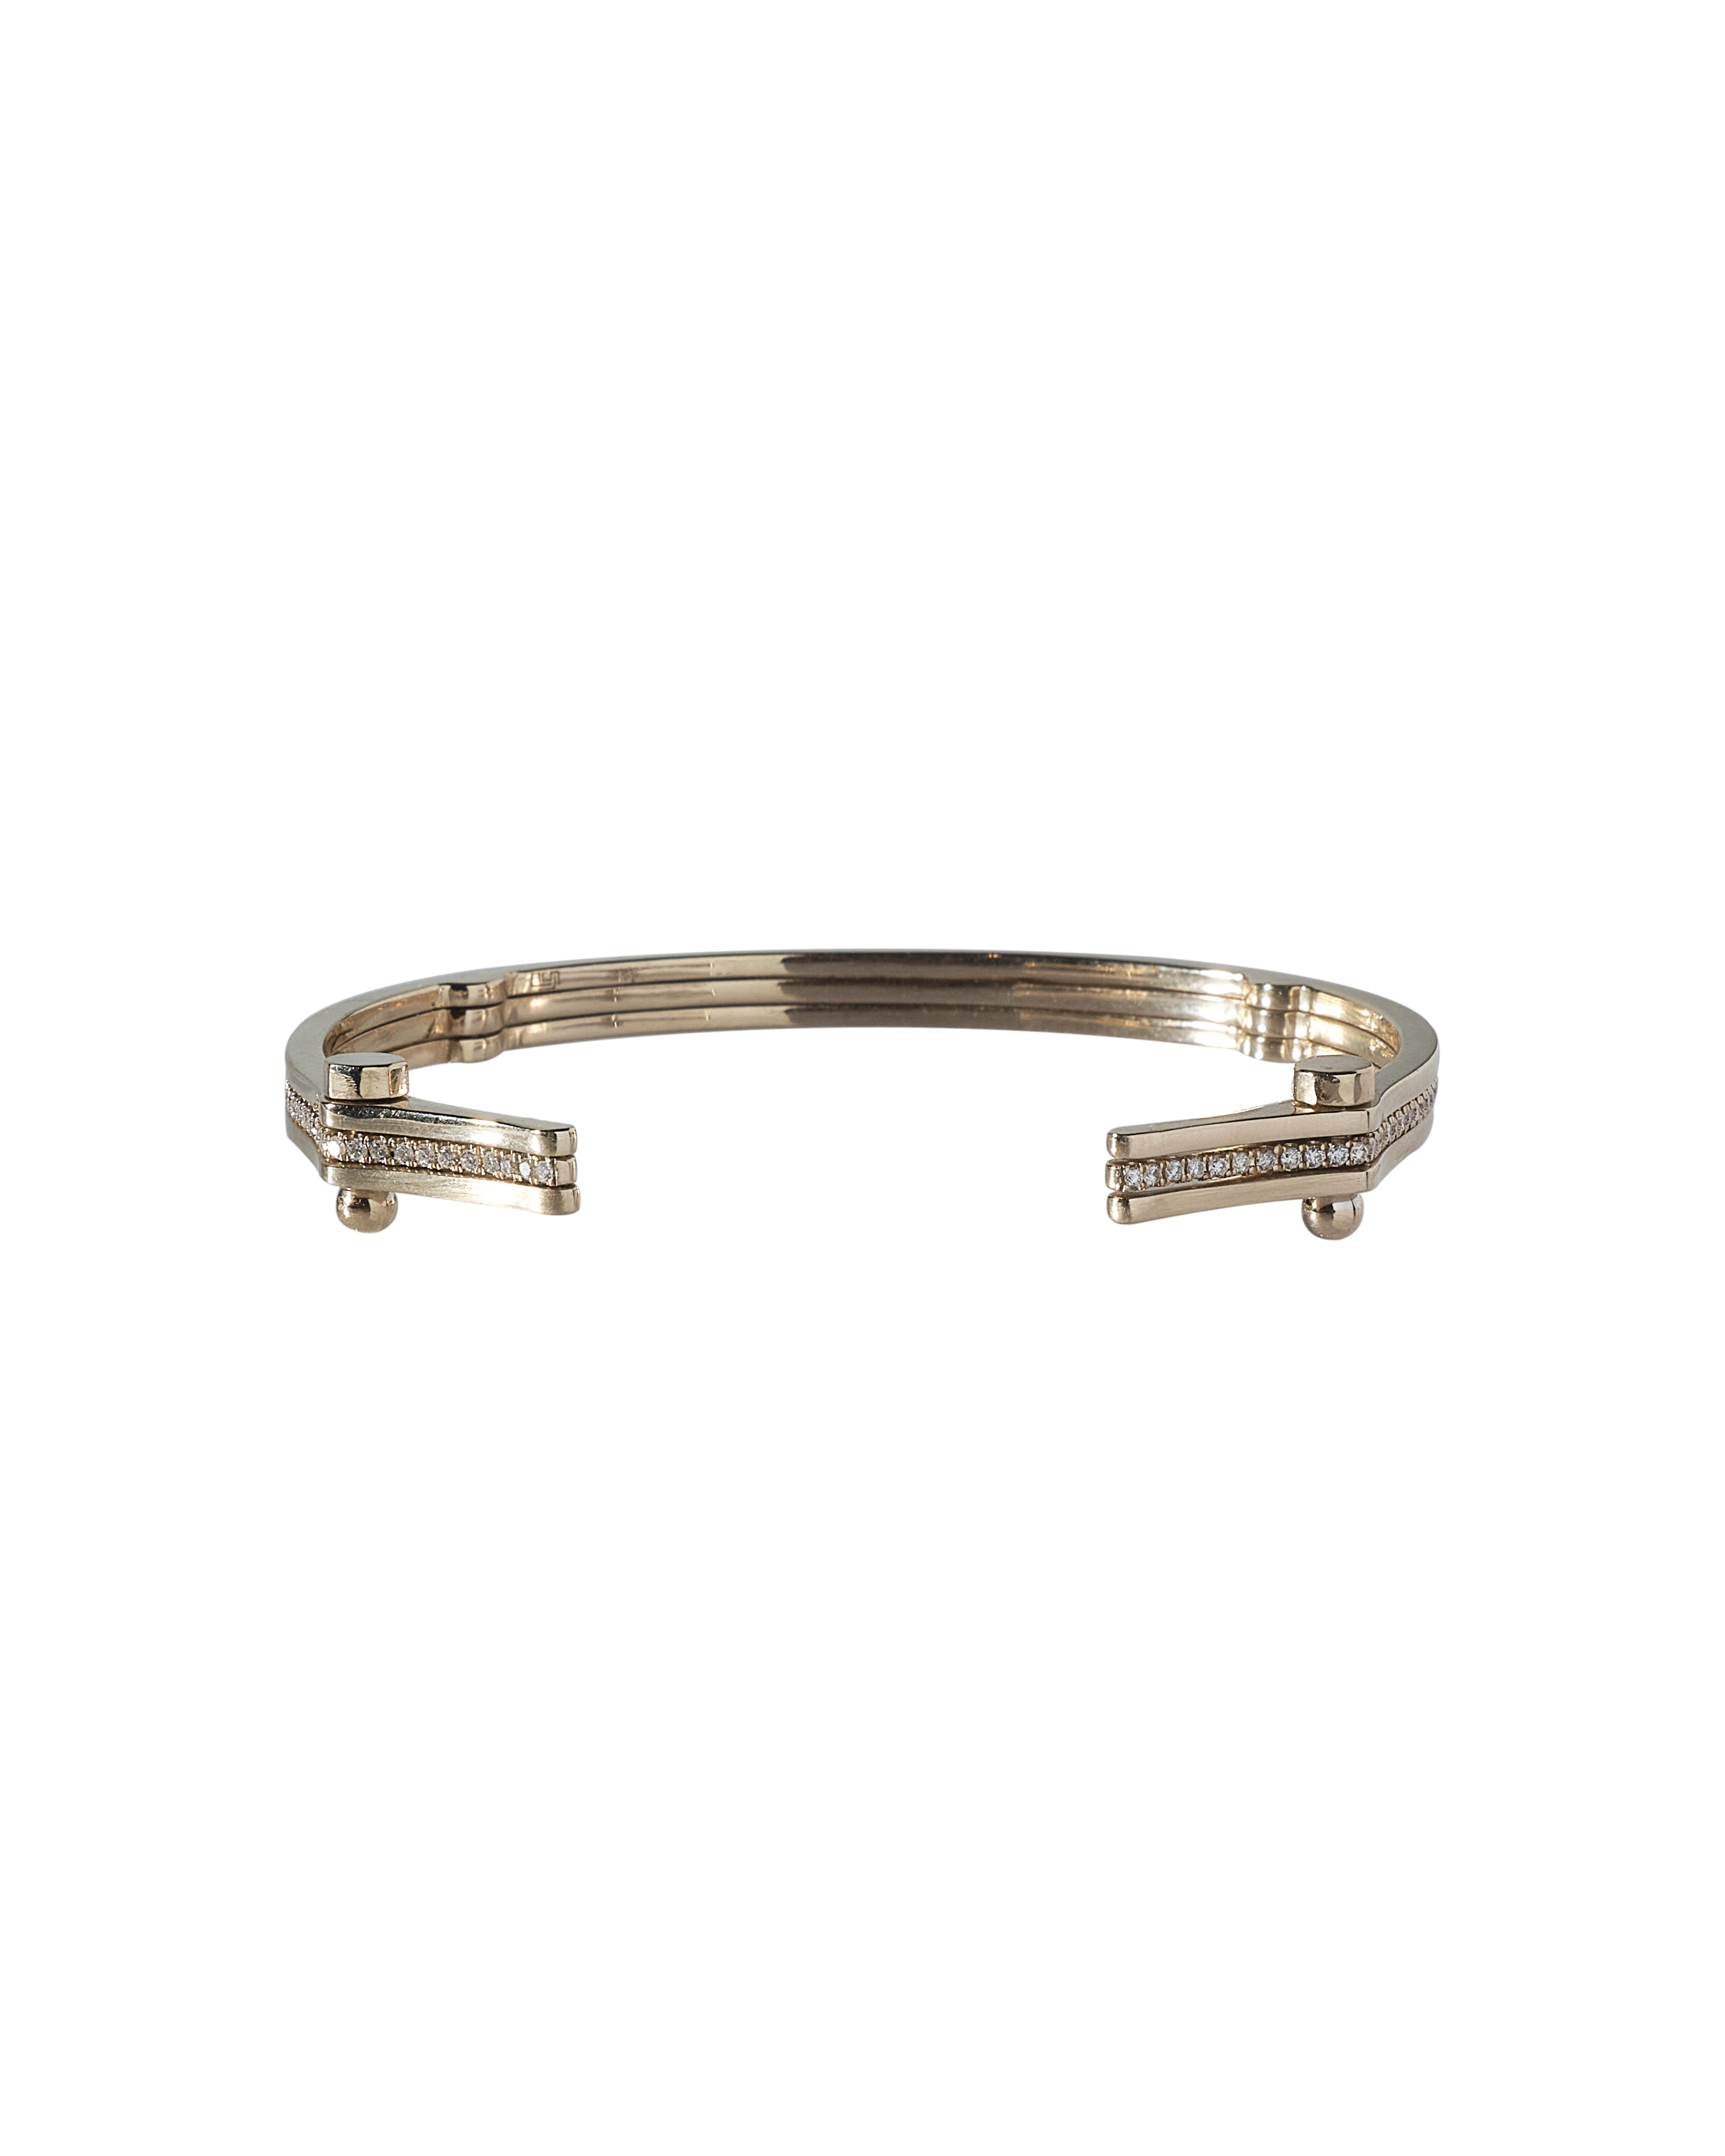 Dieses Armband aus der SYNDESIS-Kollektion von POLINA ELLIS besteht aus drei Bändern, die mit Schrauben verbunden sind. 
Die beiden äußeren Bänder sind einfarbig und mattiert, das mittlere Band ist vollflächig ausgefasst. 
Handgefertigt aus 18 Karat